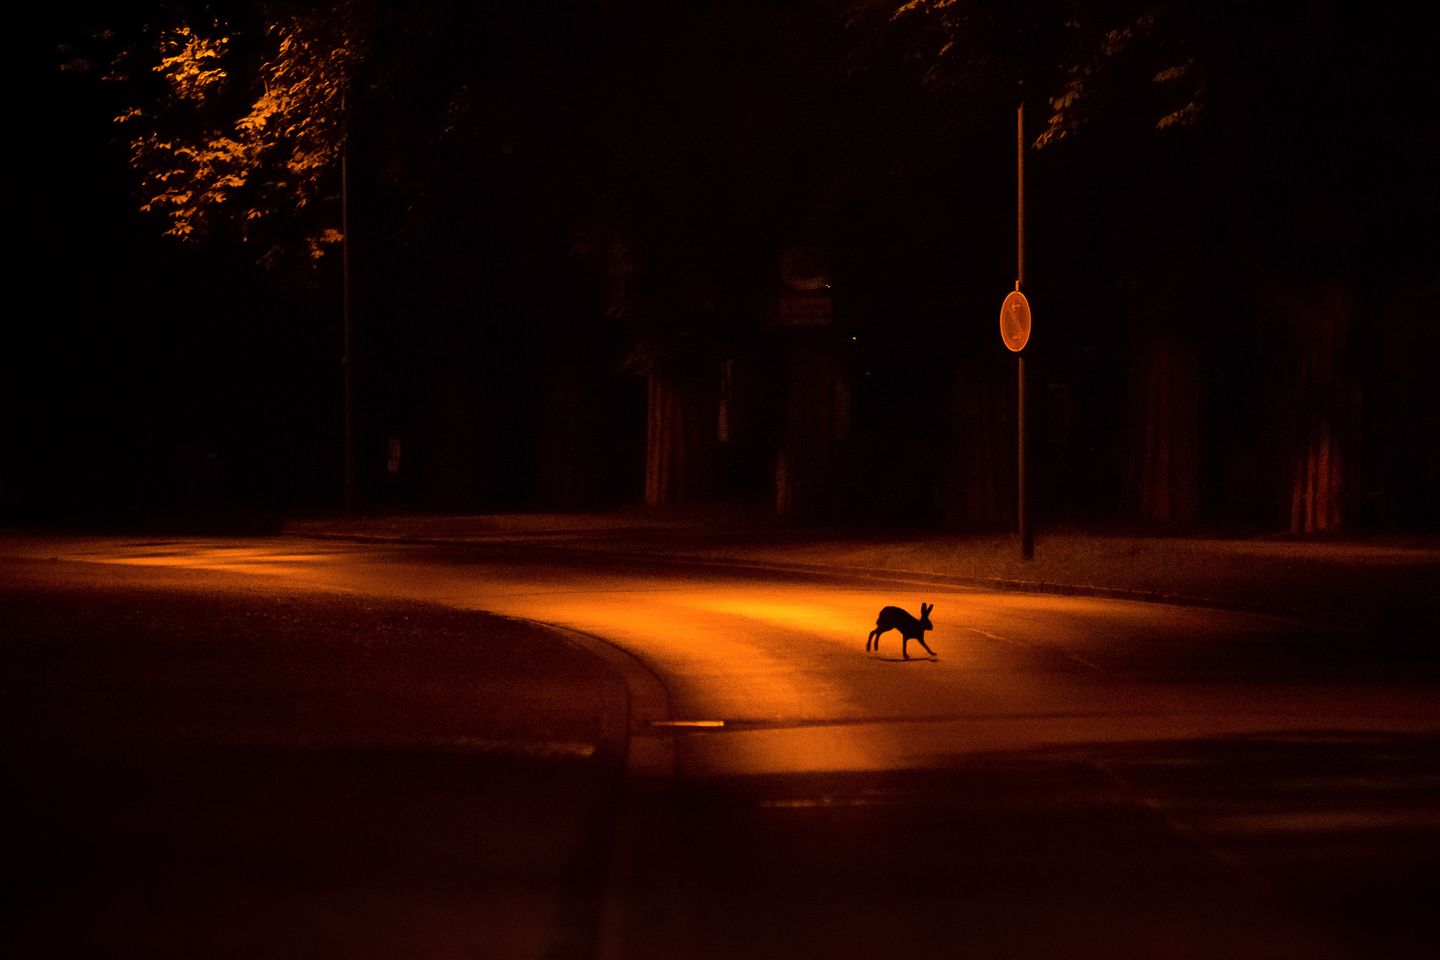 Tagsüber tummeln sich die Menschen am Stadtrand Kassels. Nachts gehört der Ort den Tieren. Jan Piecha gewinnt in der Kategorie "Urban Wildlife".